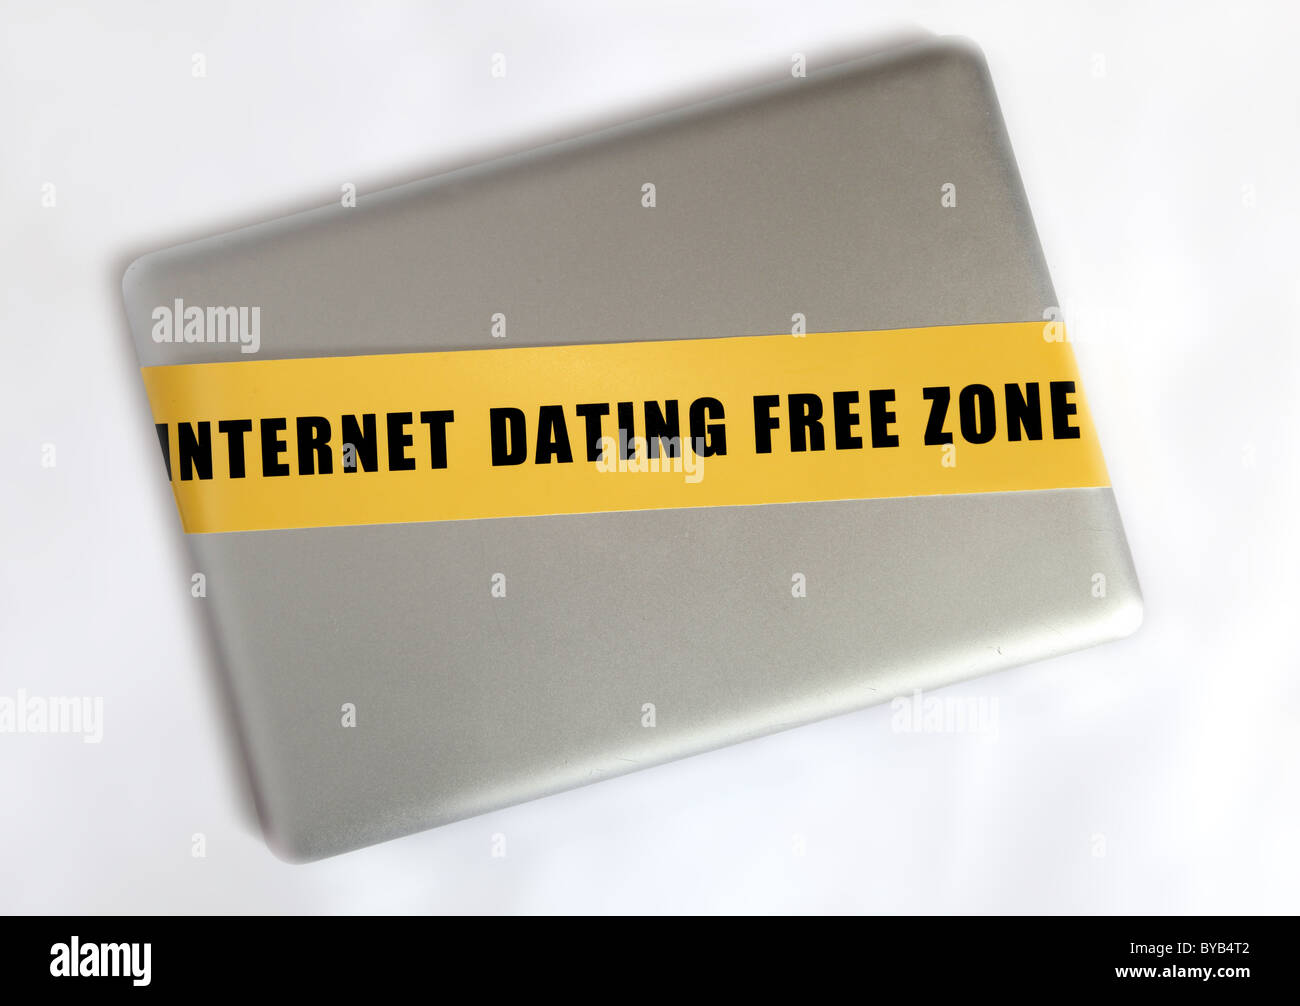 Portátil de plata con cinta amarilla con el slogan "zona franca" de citas por internet Foto de stock